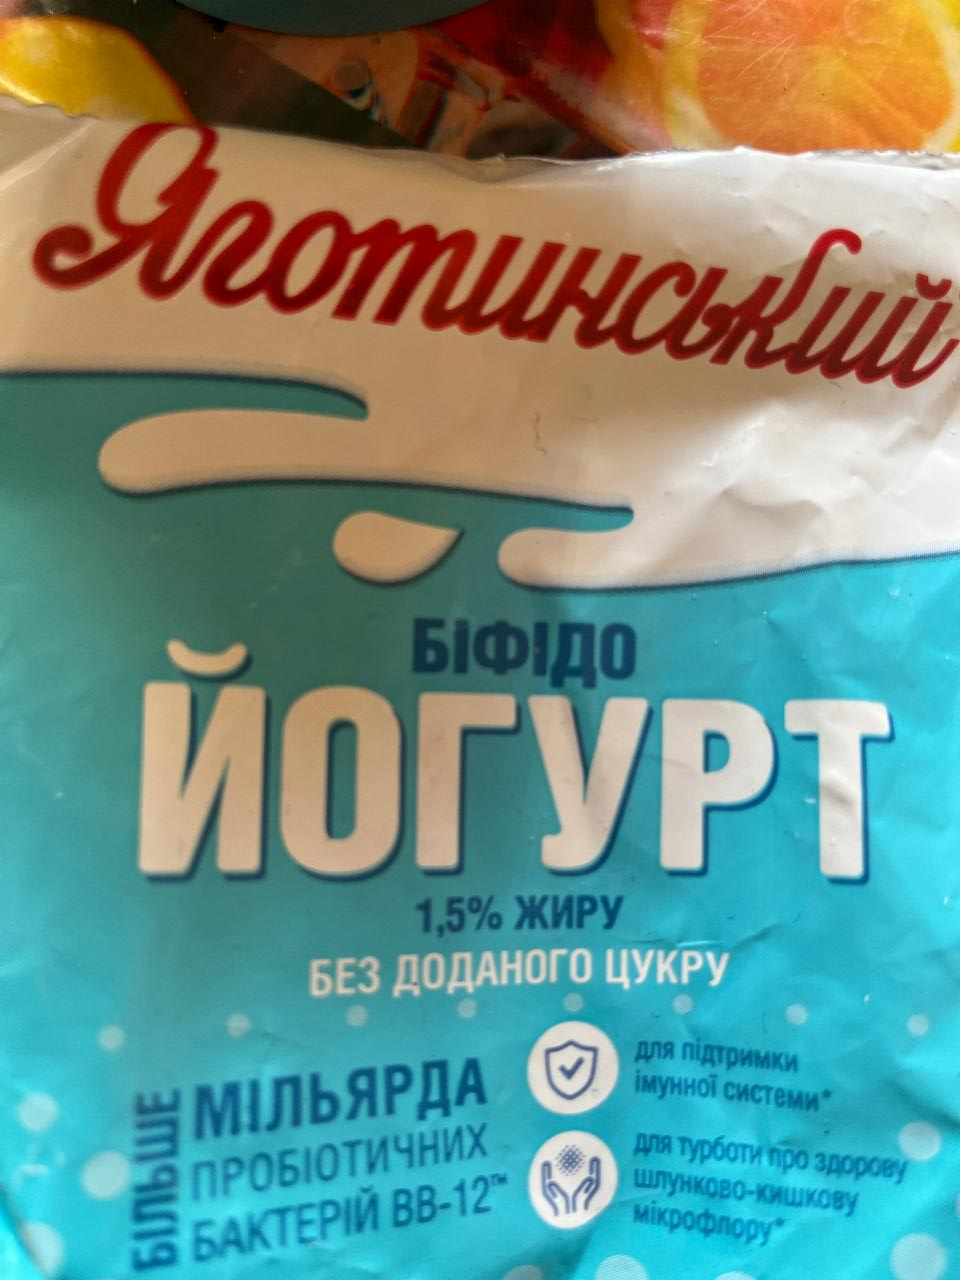 Фото - Бифидойогурт 1.5% питьевой без наполнителя Яготинський